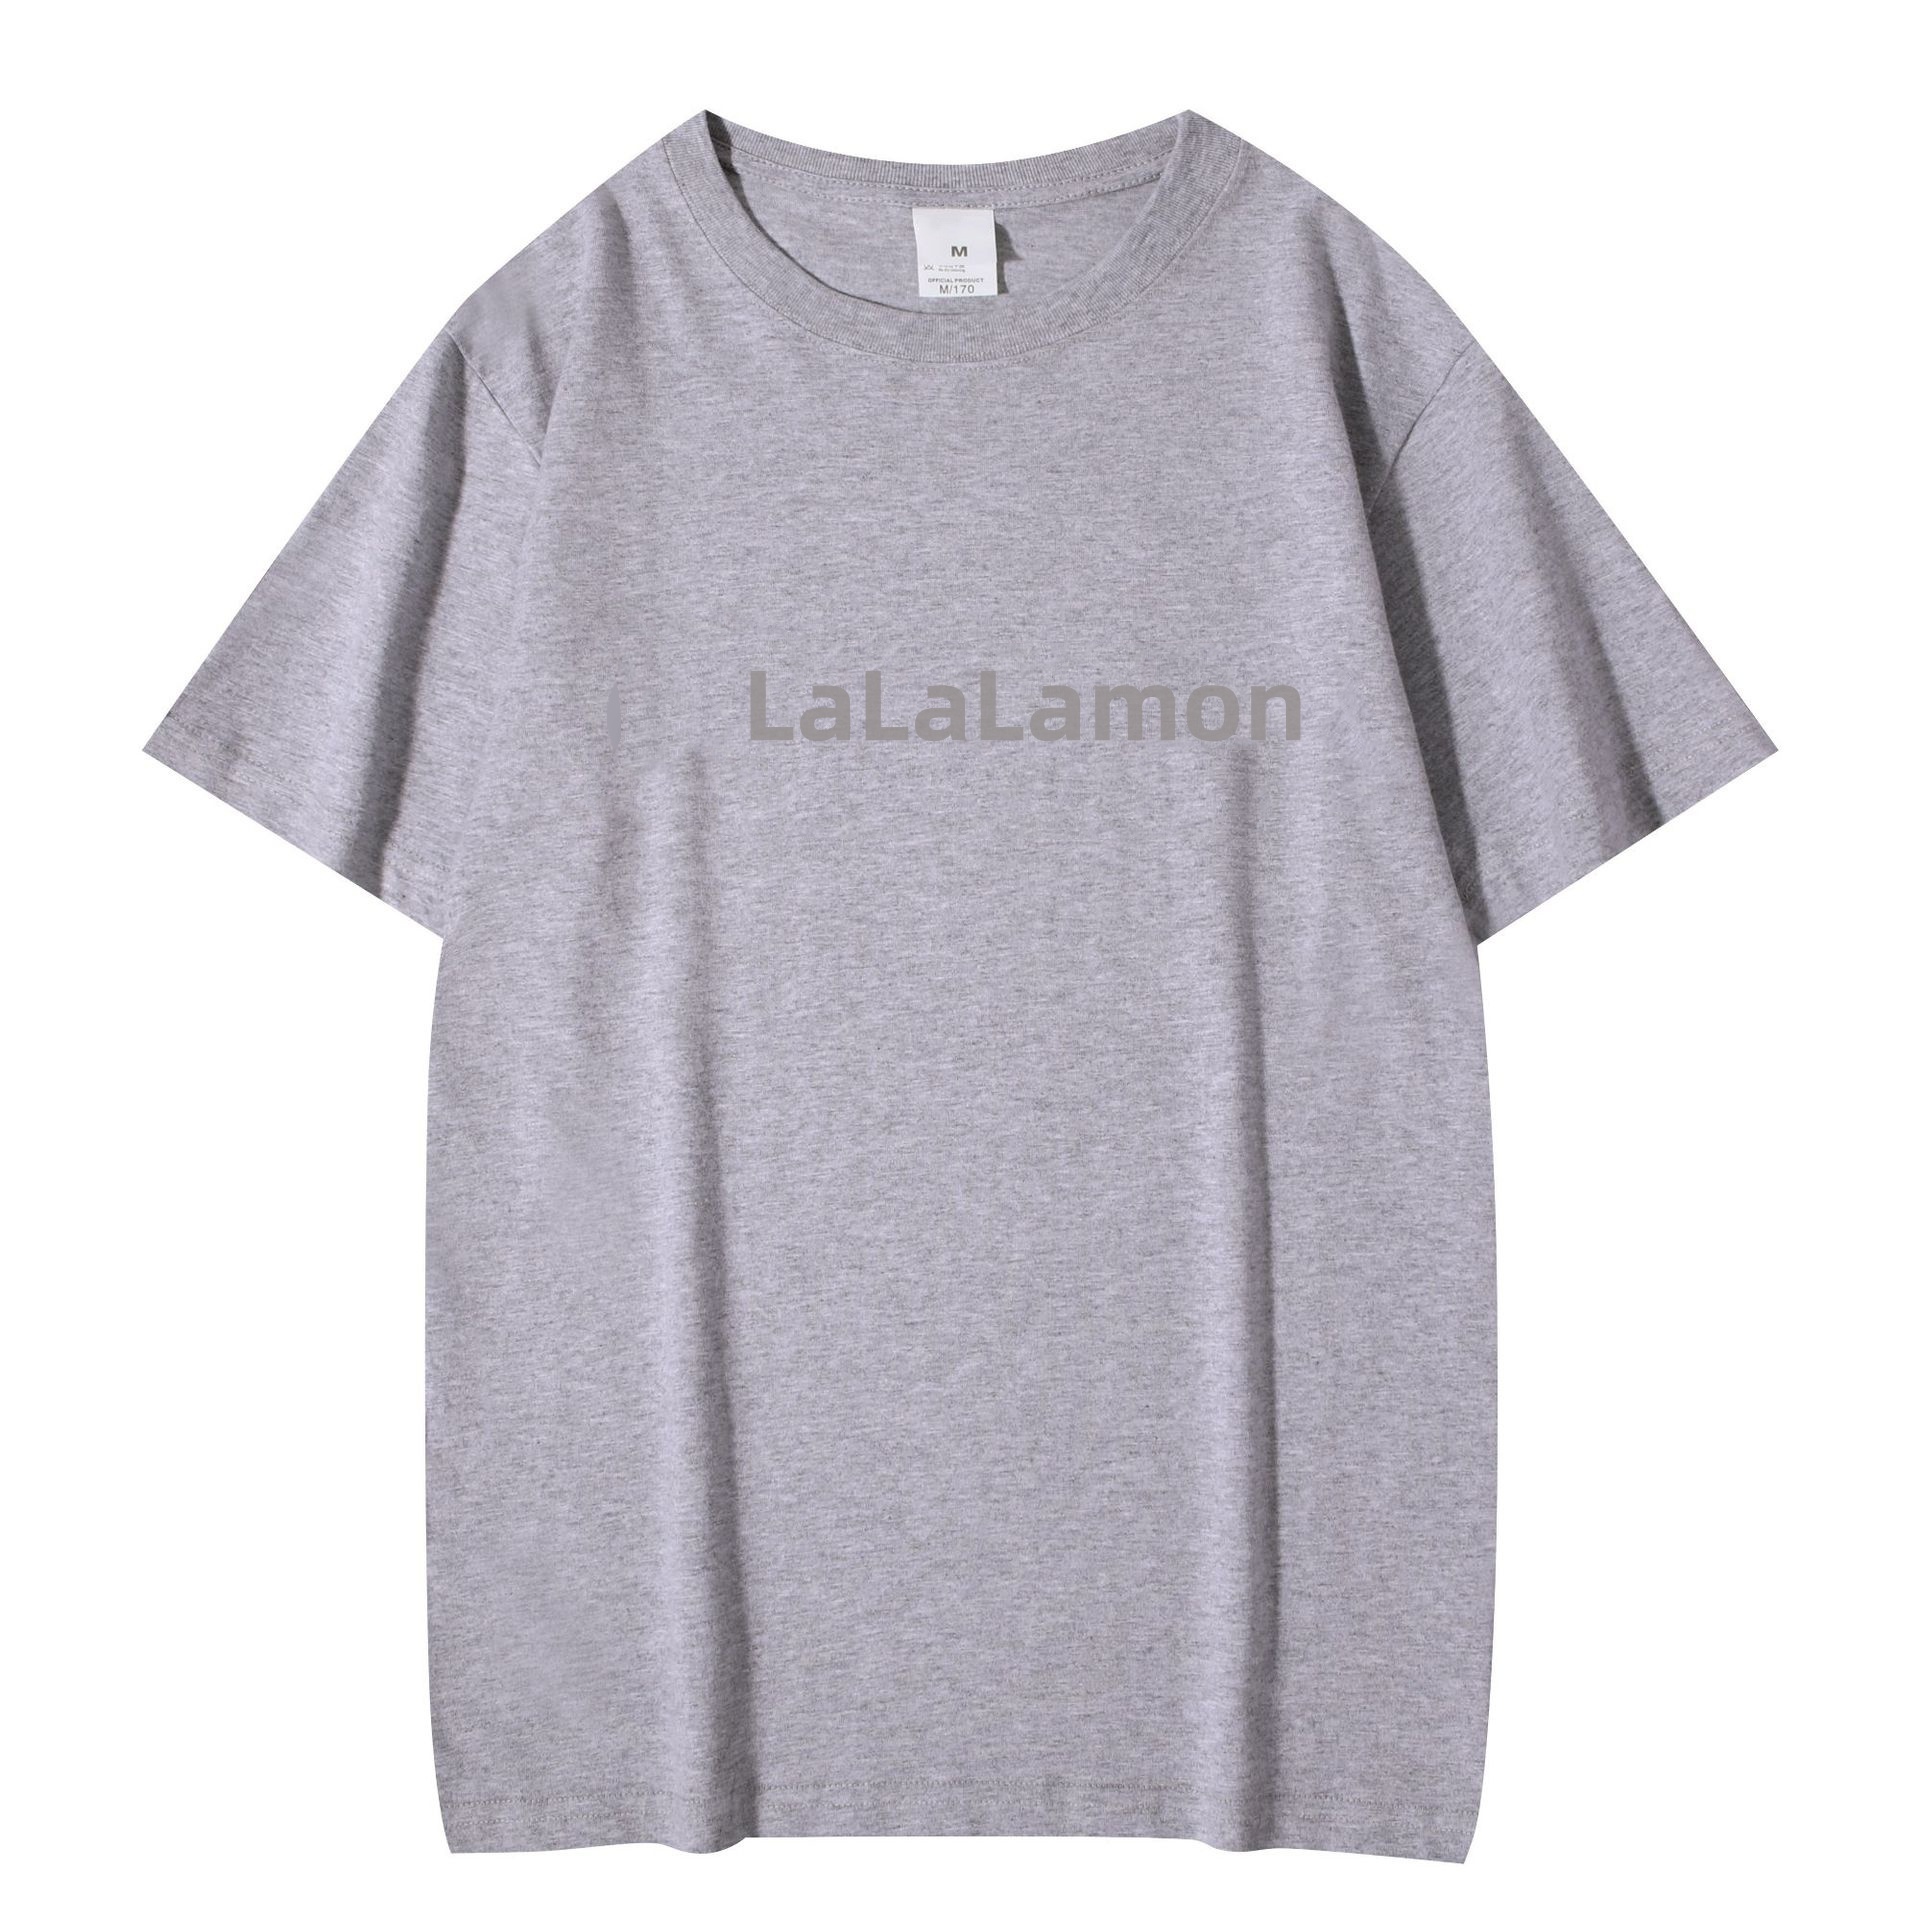 LU-1895 Camisetas de moda para hombre, camiseta de verano para hombre y mujer, diseñadores de algodón, camisas casuales de manga corta, ropa informal estilo Hip Hop, camiseta